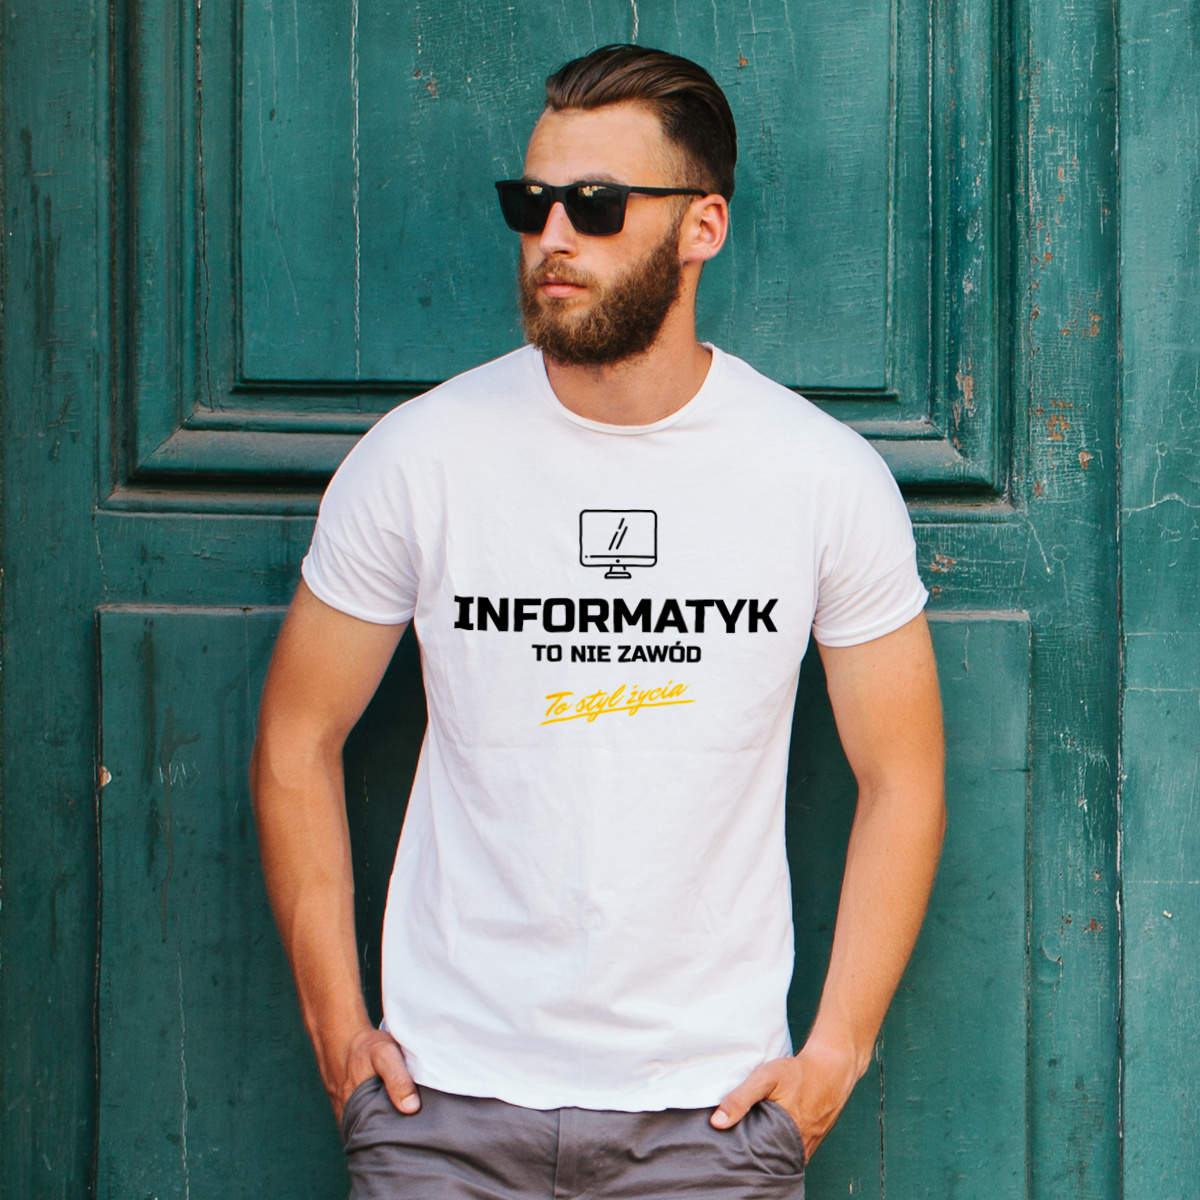 Informatyk To Nie Zawód - To Styl Życia - Męska Koszulka Biała